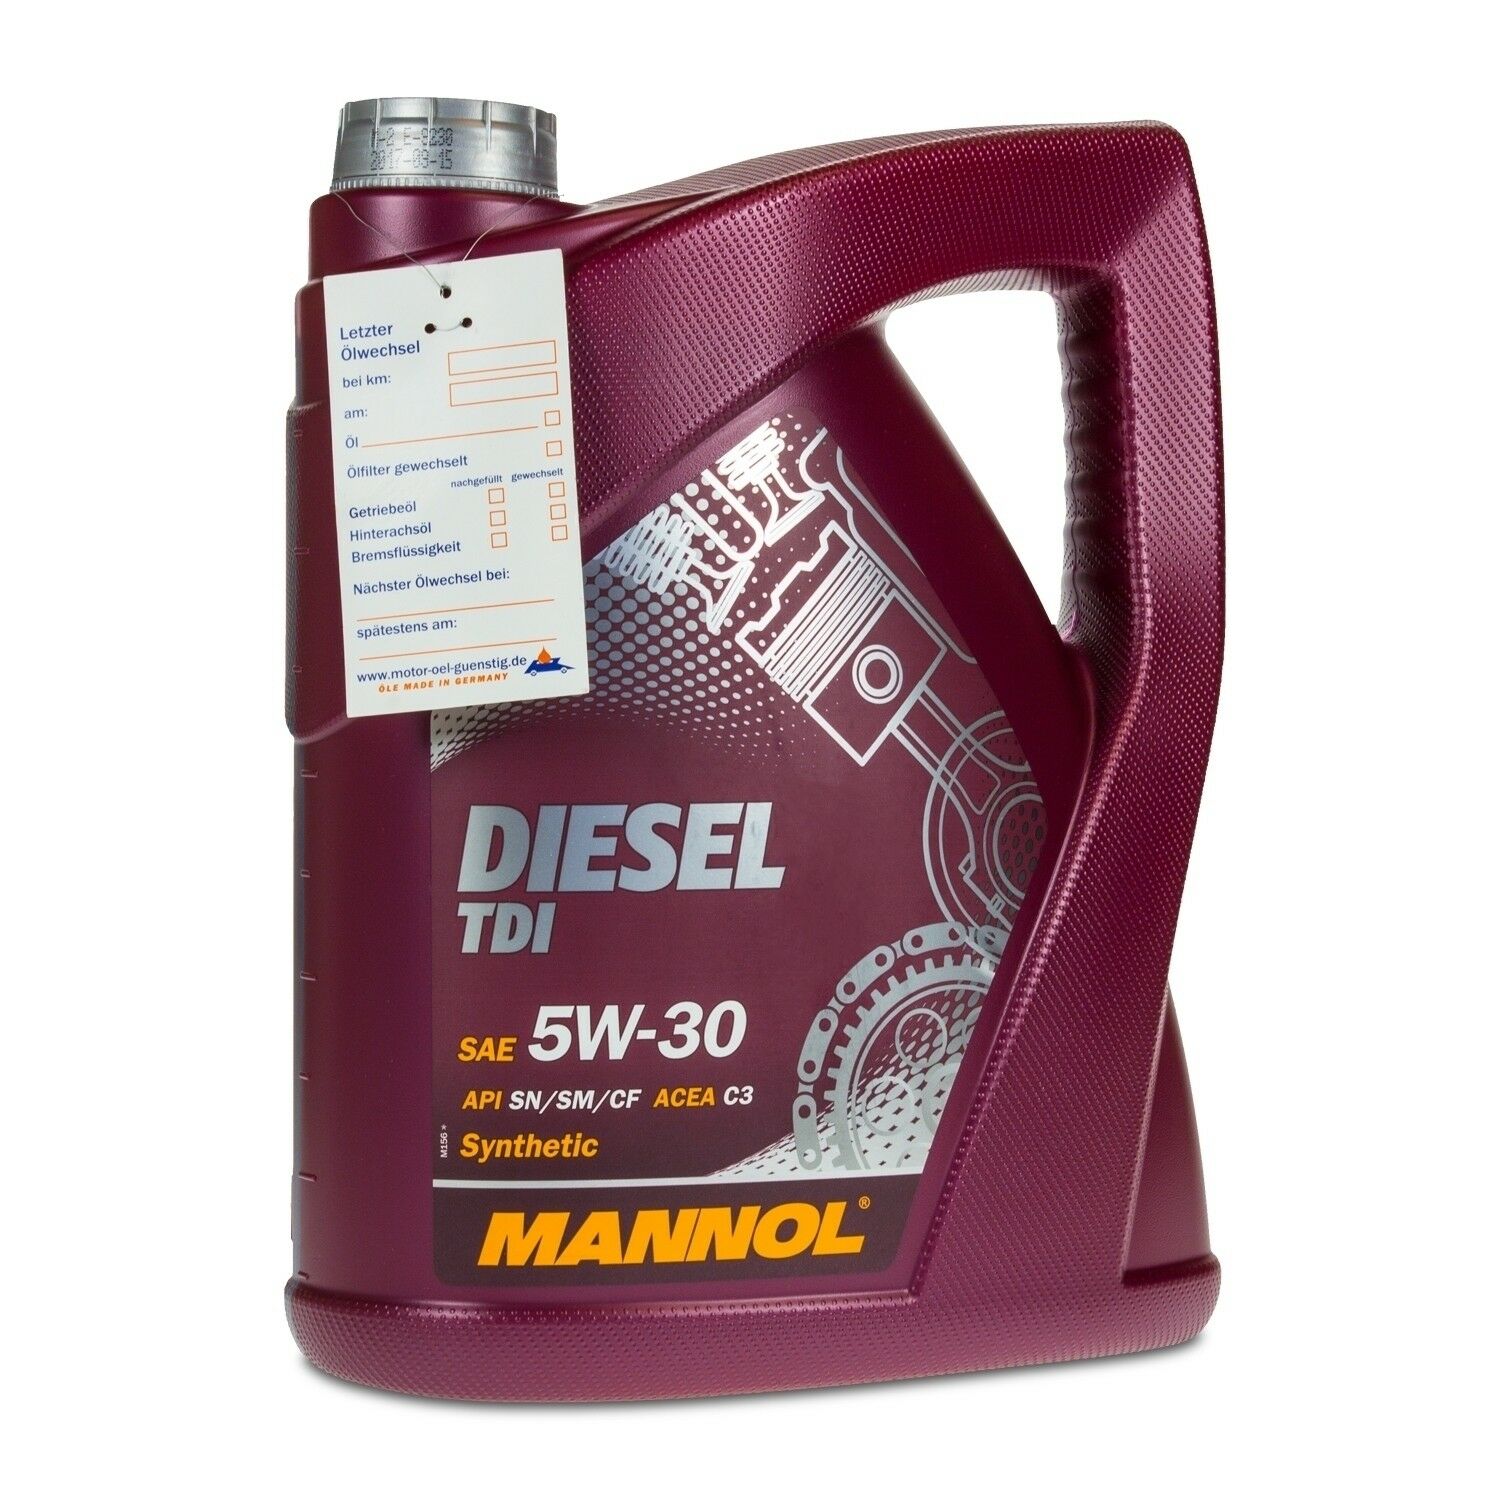 5 Liter MANNOL 5W-30 Diesel TDI Motoröl für VW, Audi, Seat, Skoda für